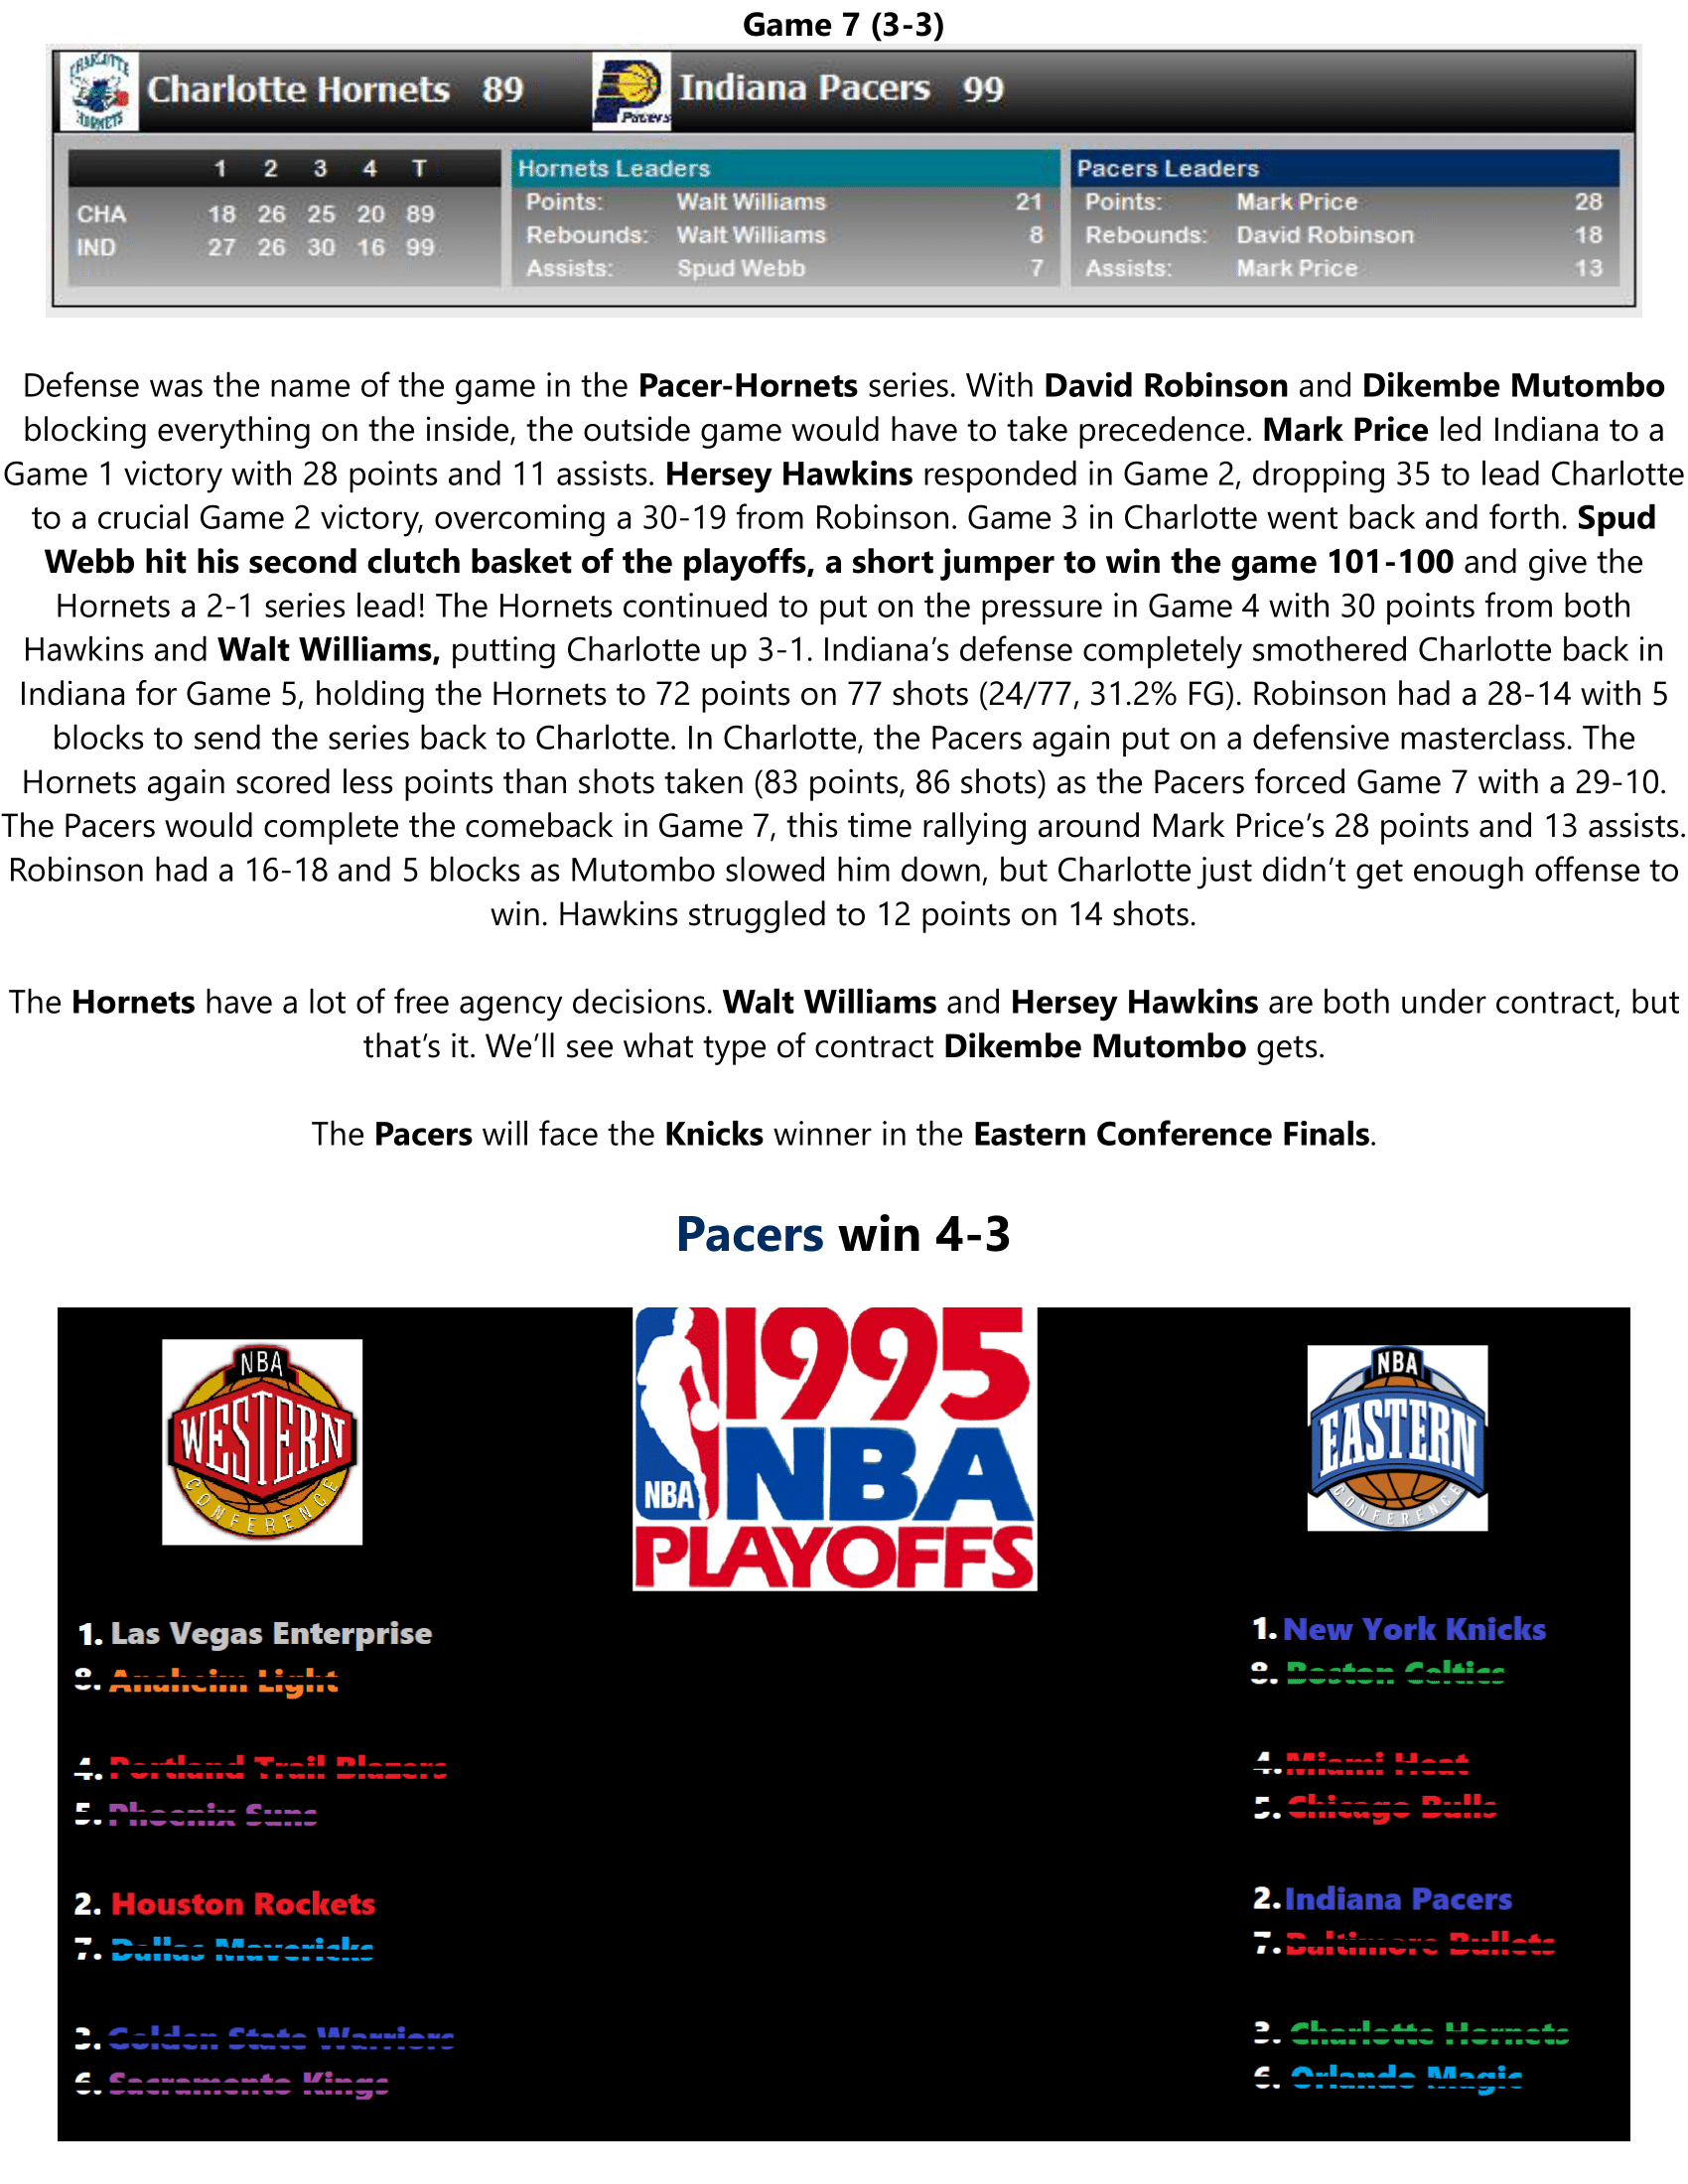 94-95-Part-4-Playoffs-17.png